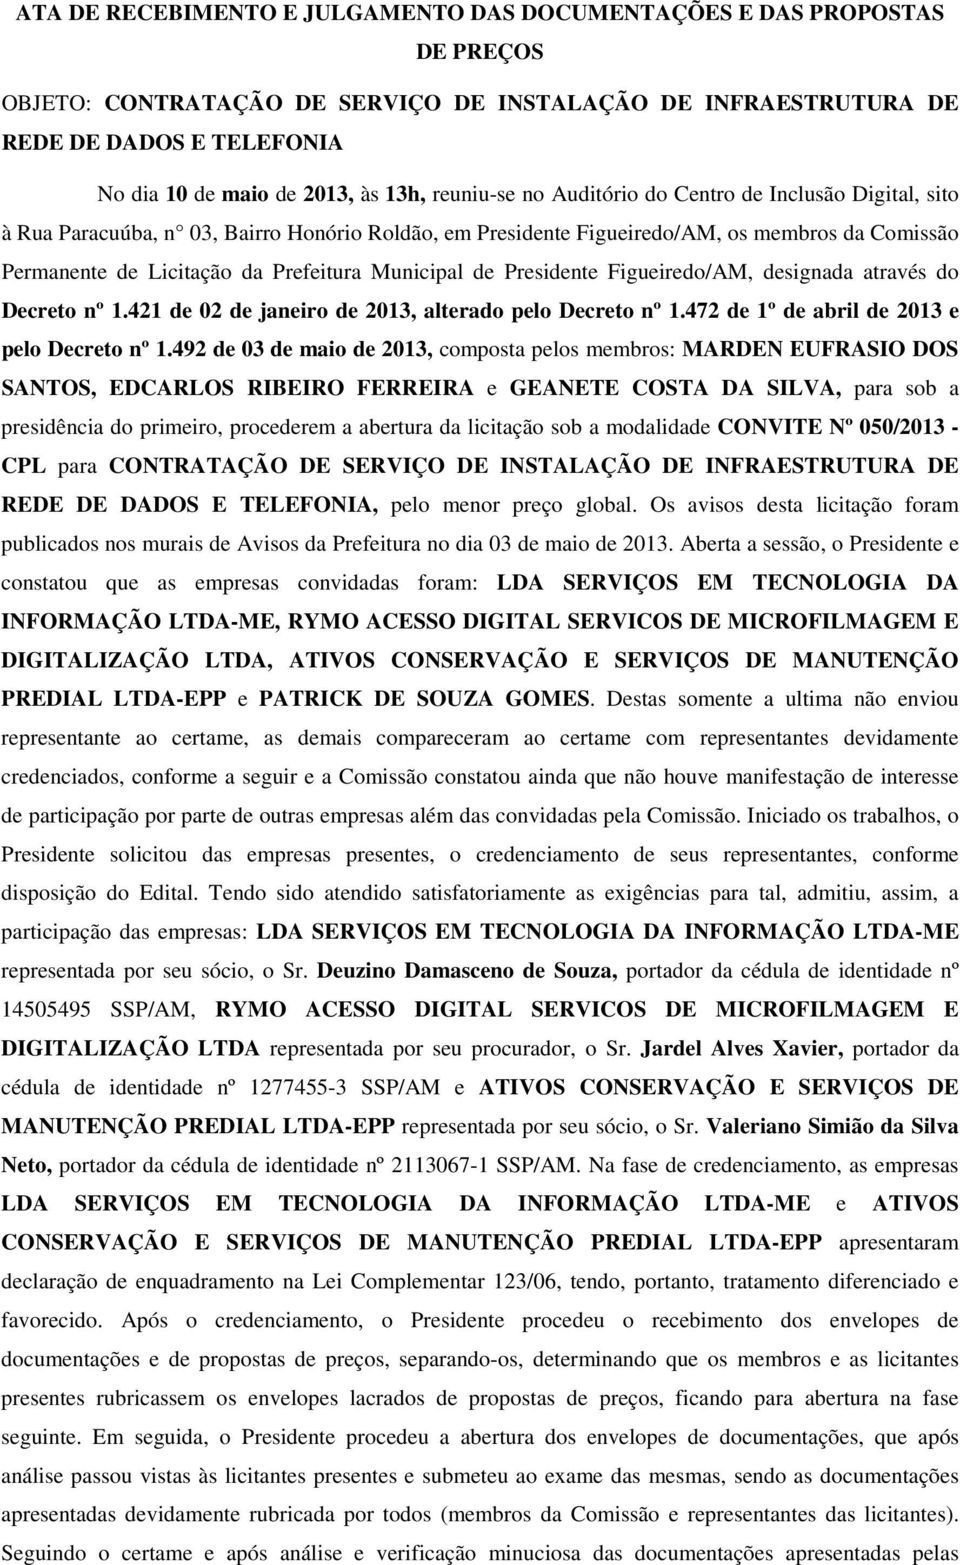 Municipal de Presidente Figueiredo/AM, designada através do Decreto nº 1.421 de 02 de janeiro de 2013, alterado pelo Decreto nº 1.472 de 1º de abril de 2013 e pelo Decreto nº 1.